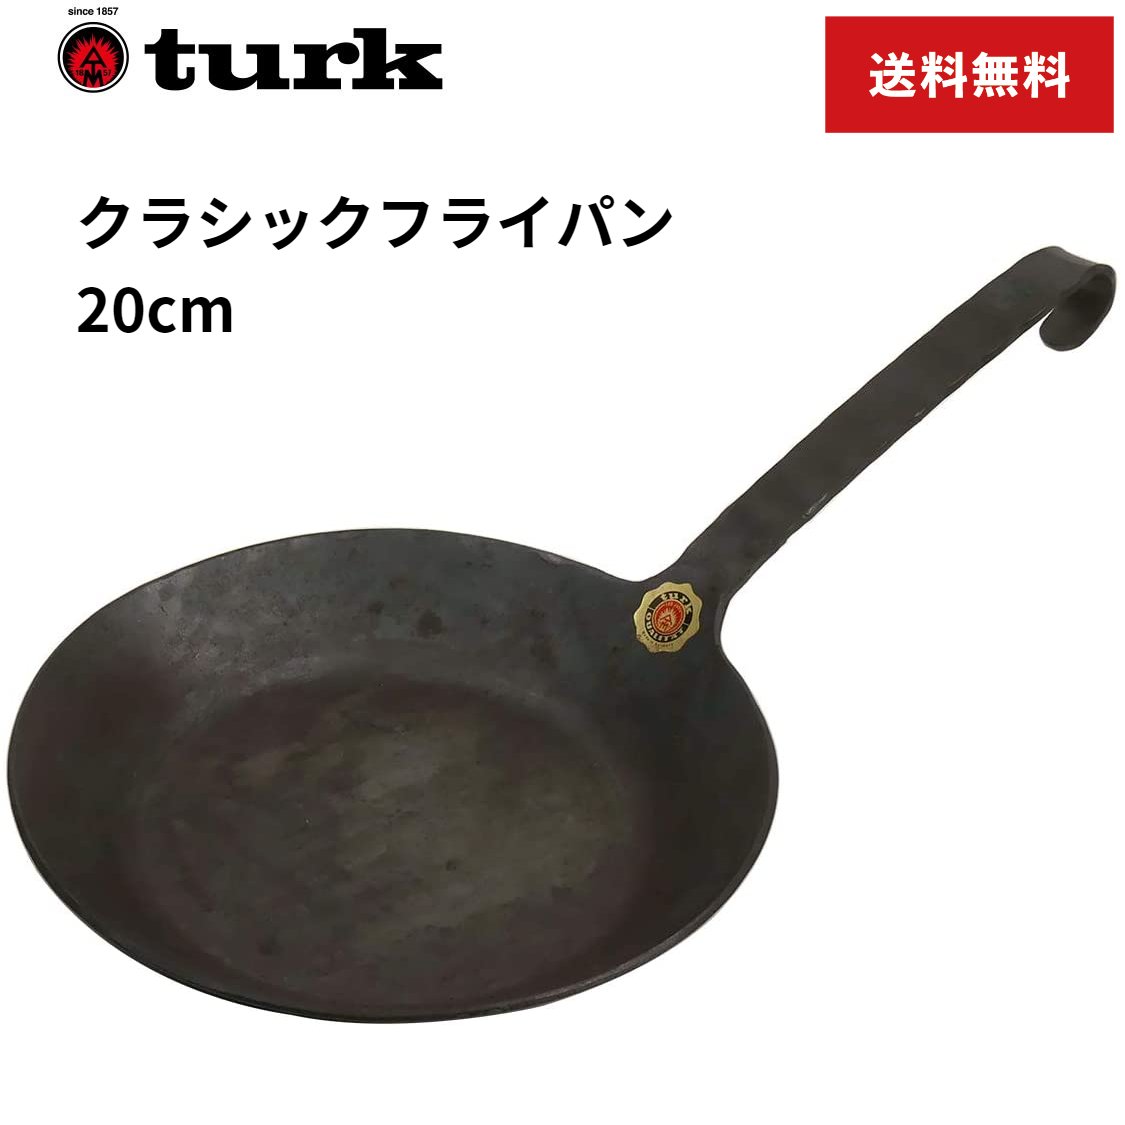 ターク クラシック フライパン 20cm 65520 人気の製品 つなぎ目のない一体型のフライパン Turk Classic Frying 調理器具 pan 鉄製 最上の品質な キッチン用品 海外正規品 ドイツ製